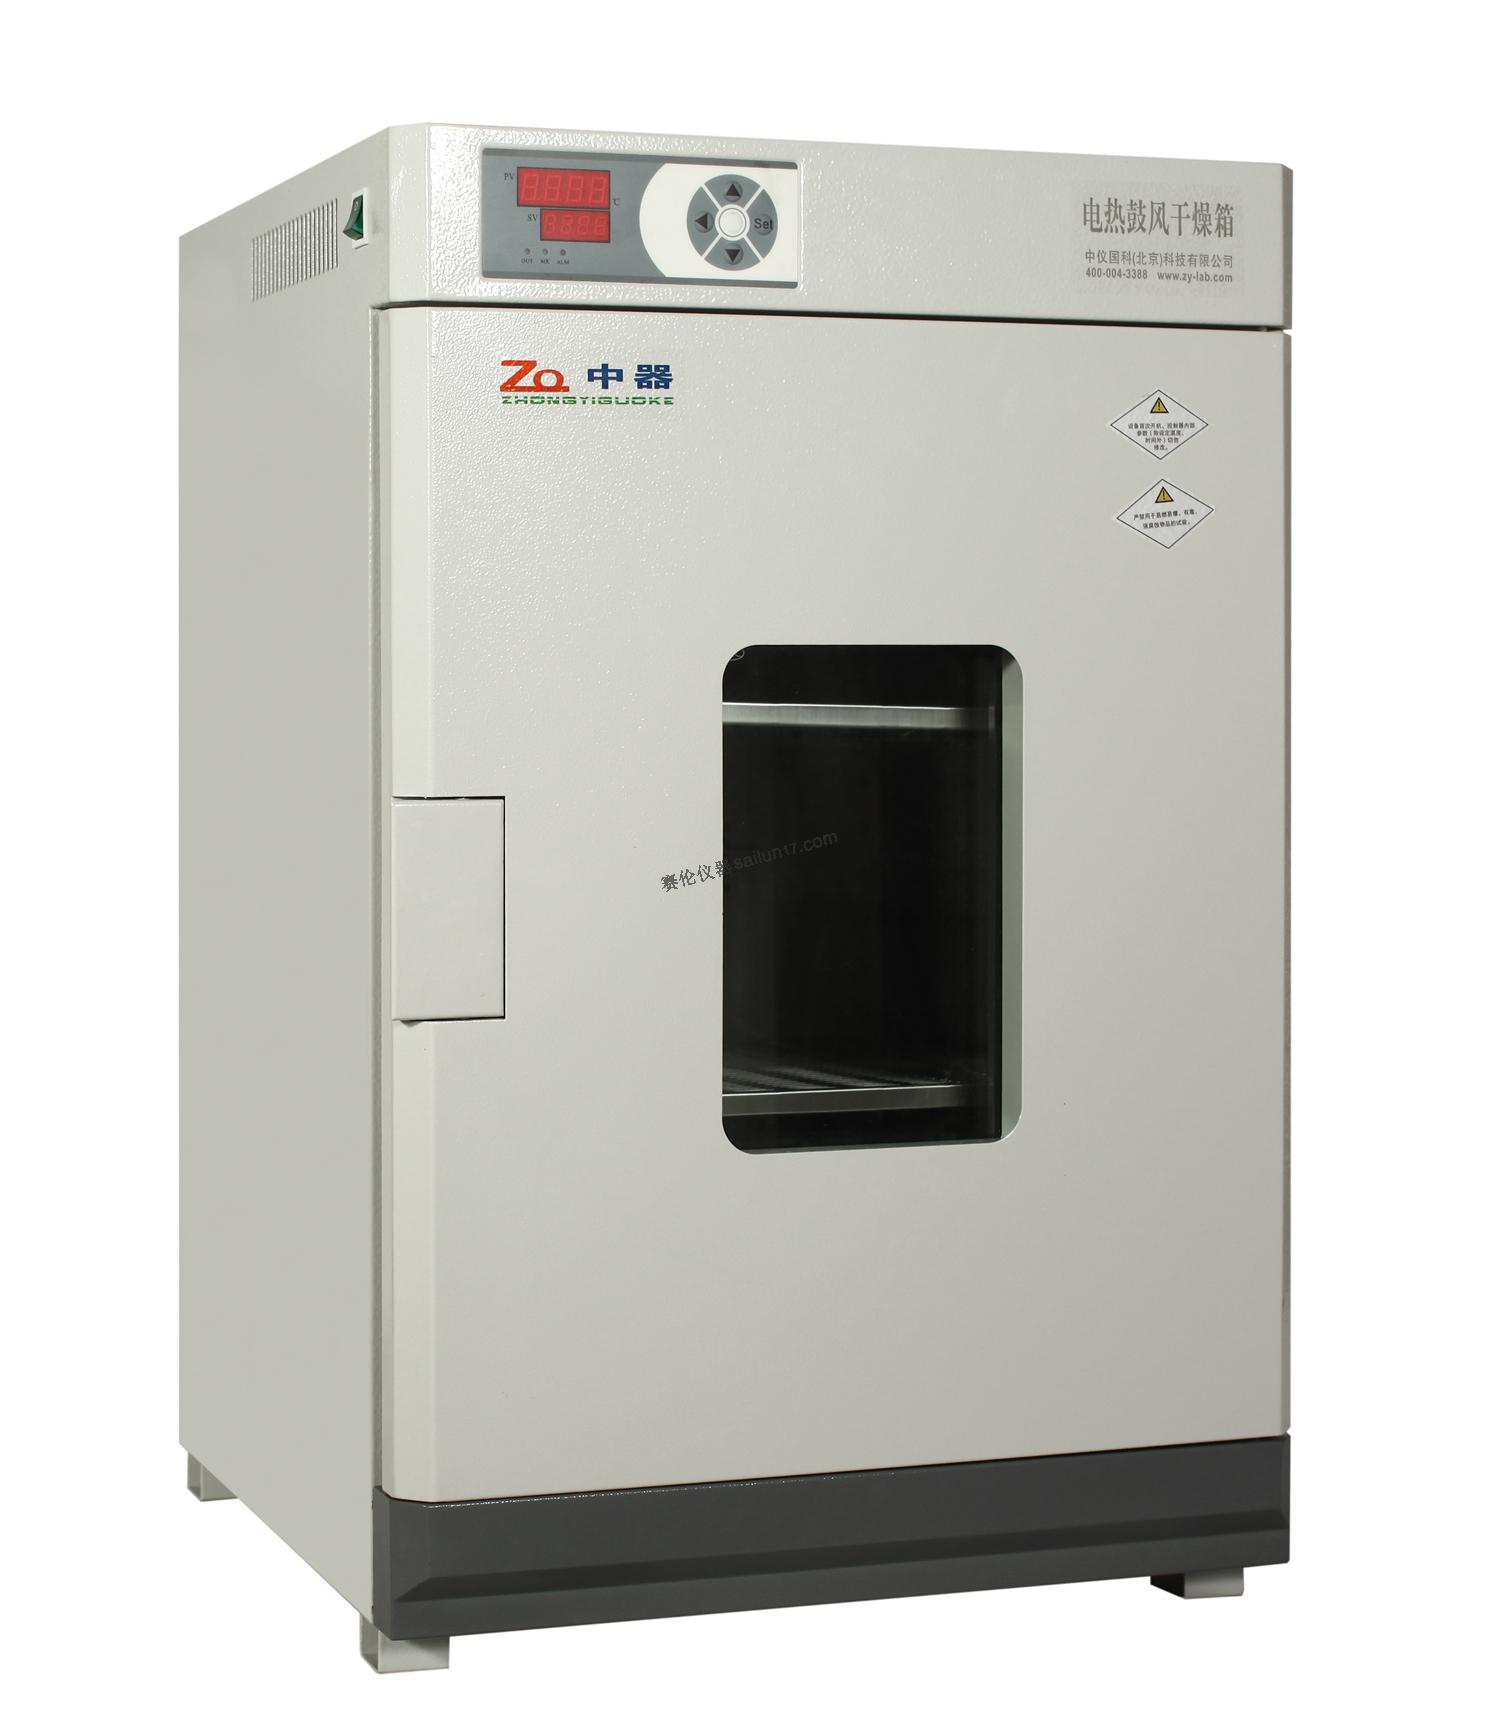 中器DHG-9420A电热鼓风干燥箱(250℃)